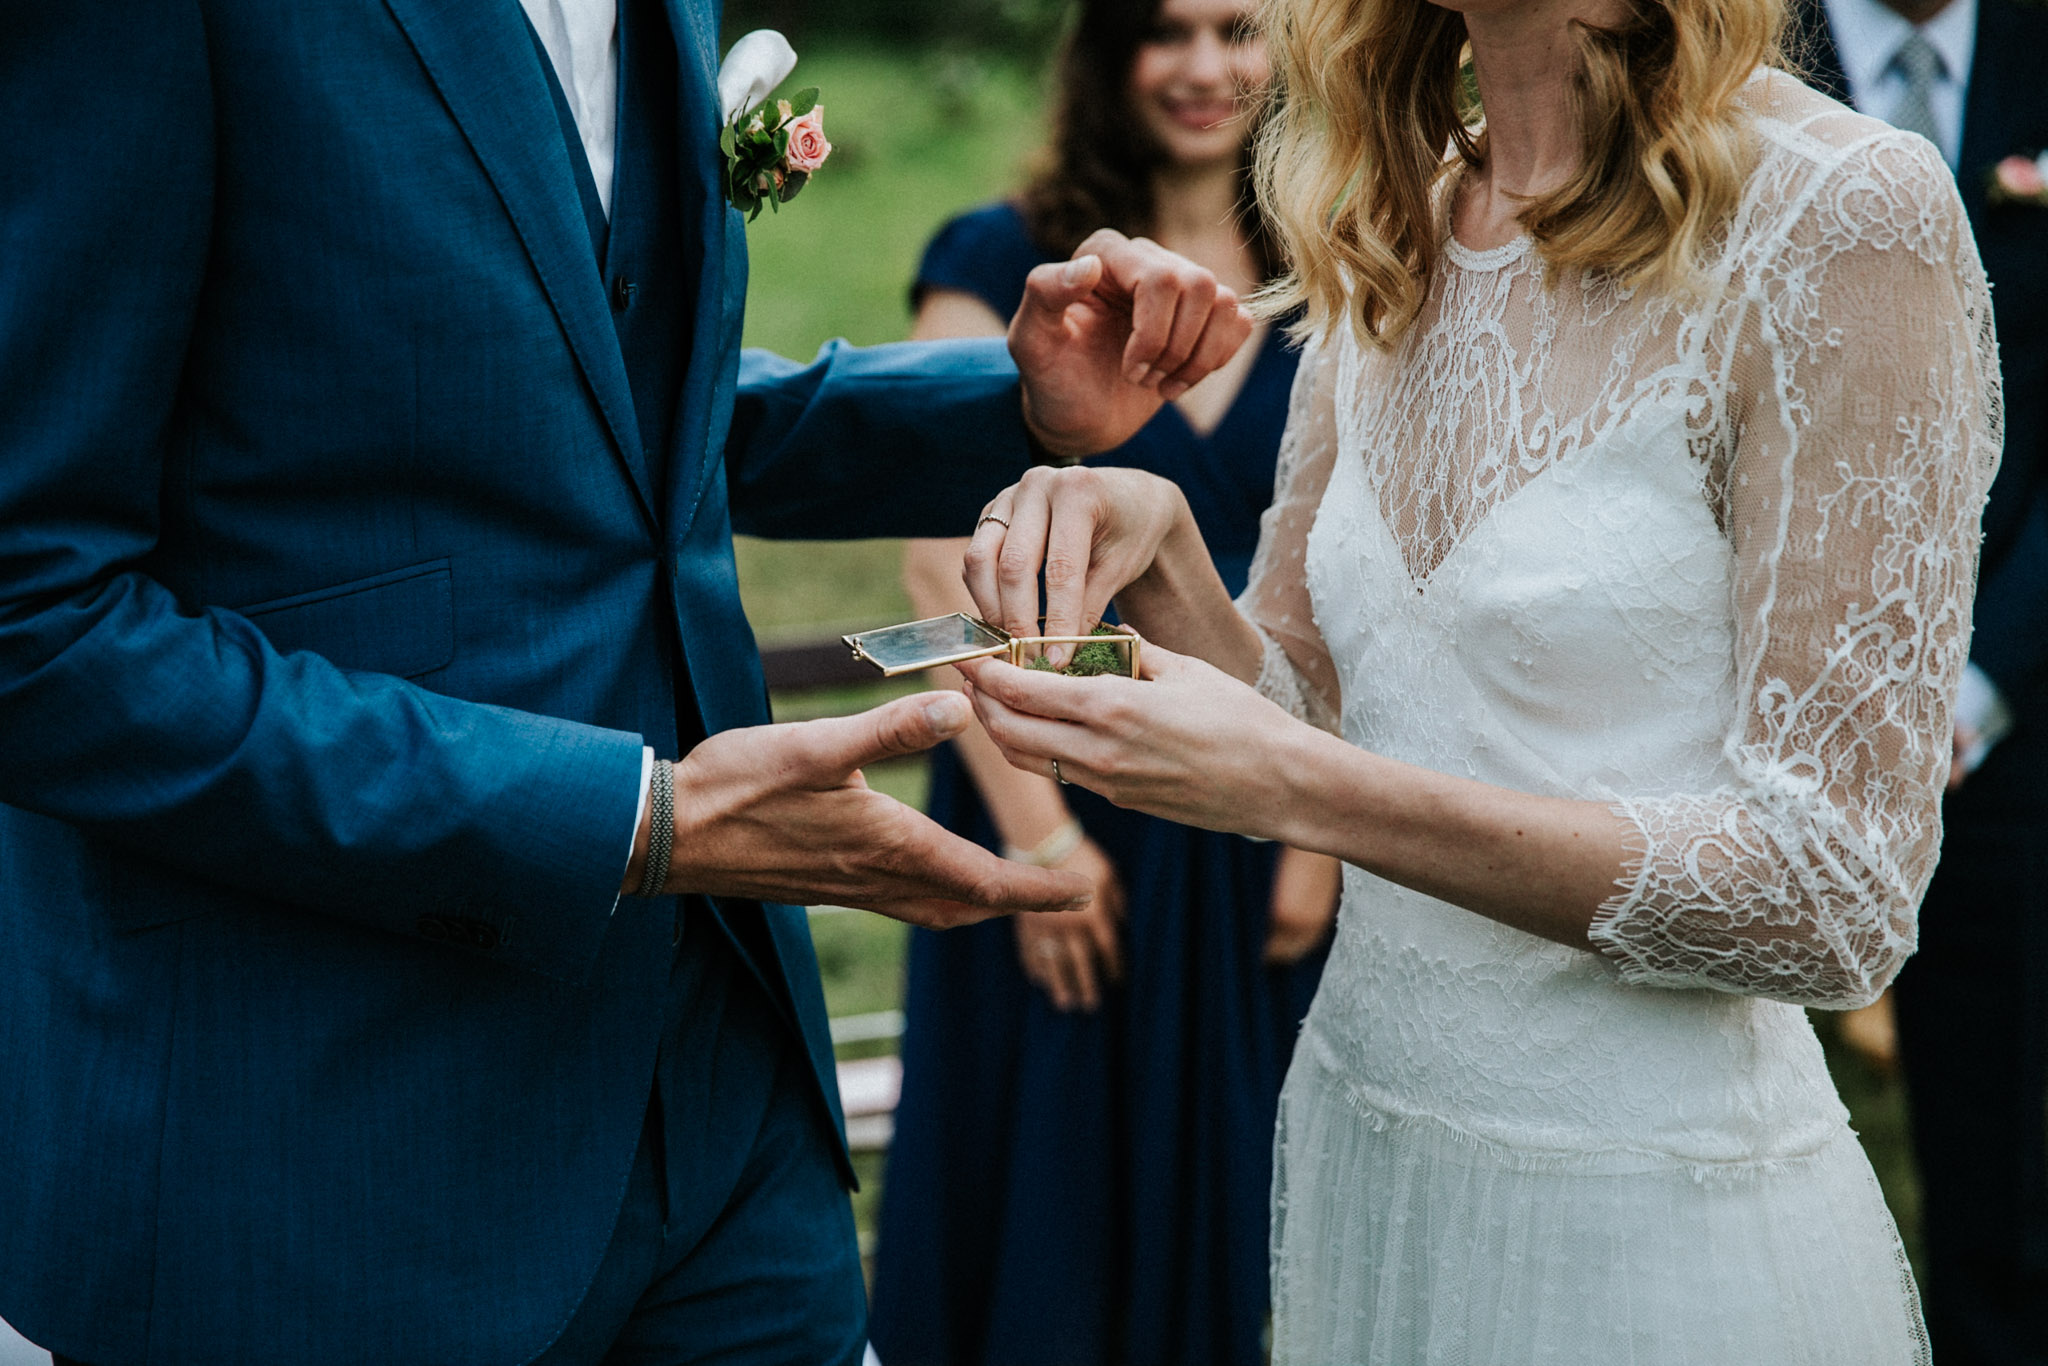 Fotograf auf einer Hochzeit macht Fotos vom Brautpaar